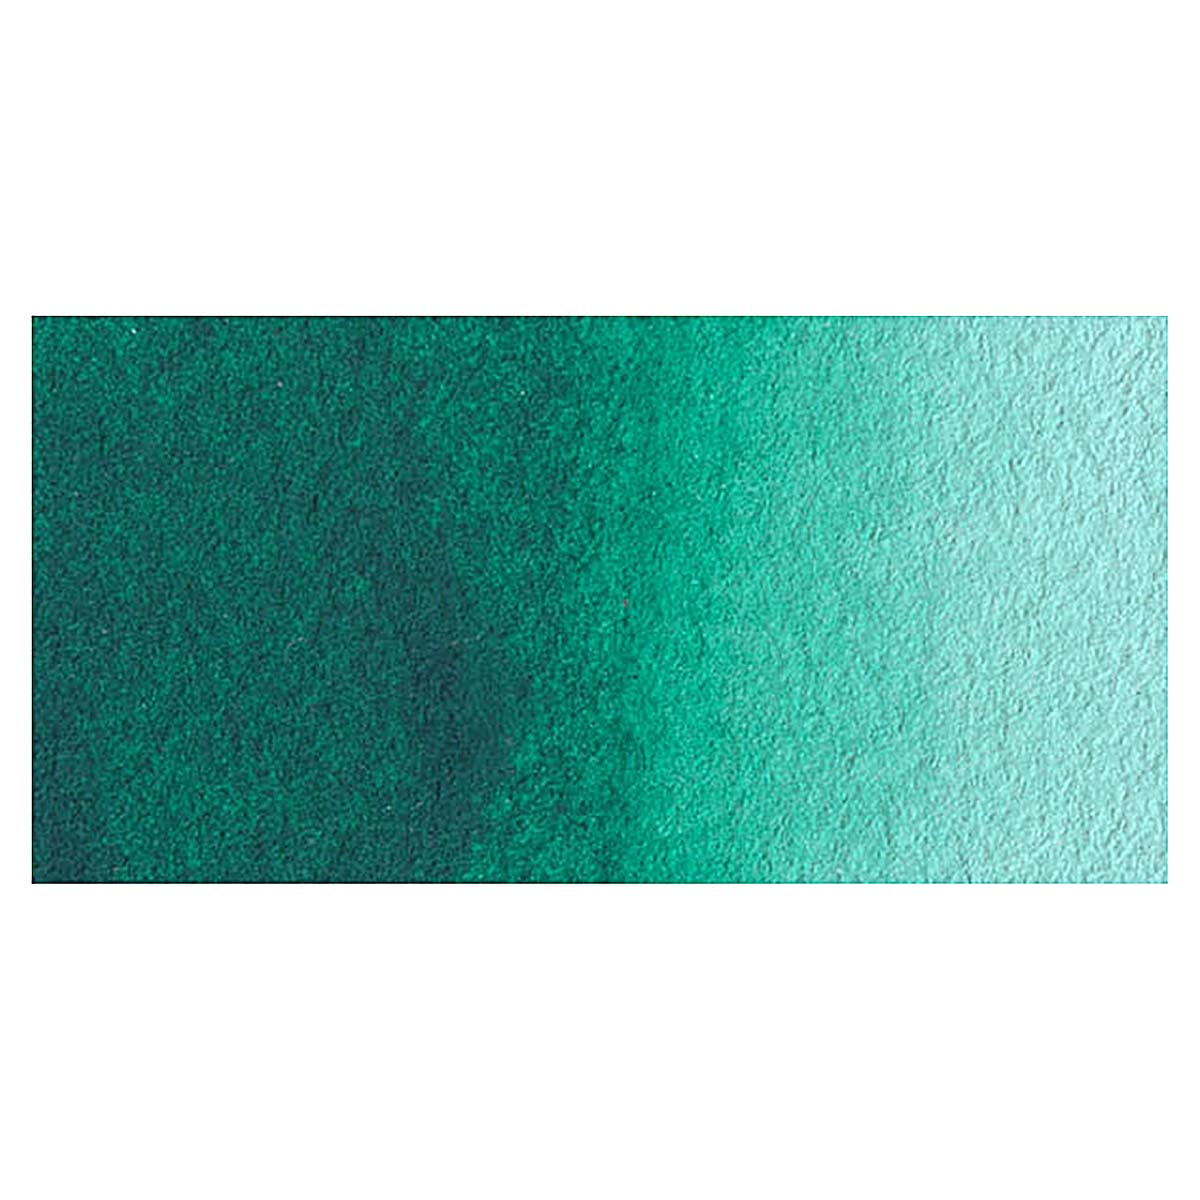 Da Vinci Cobalt Green Hue Artist Watercolor Paint – 37ml